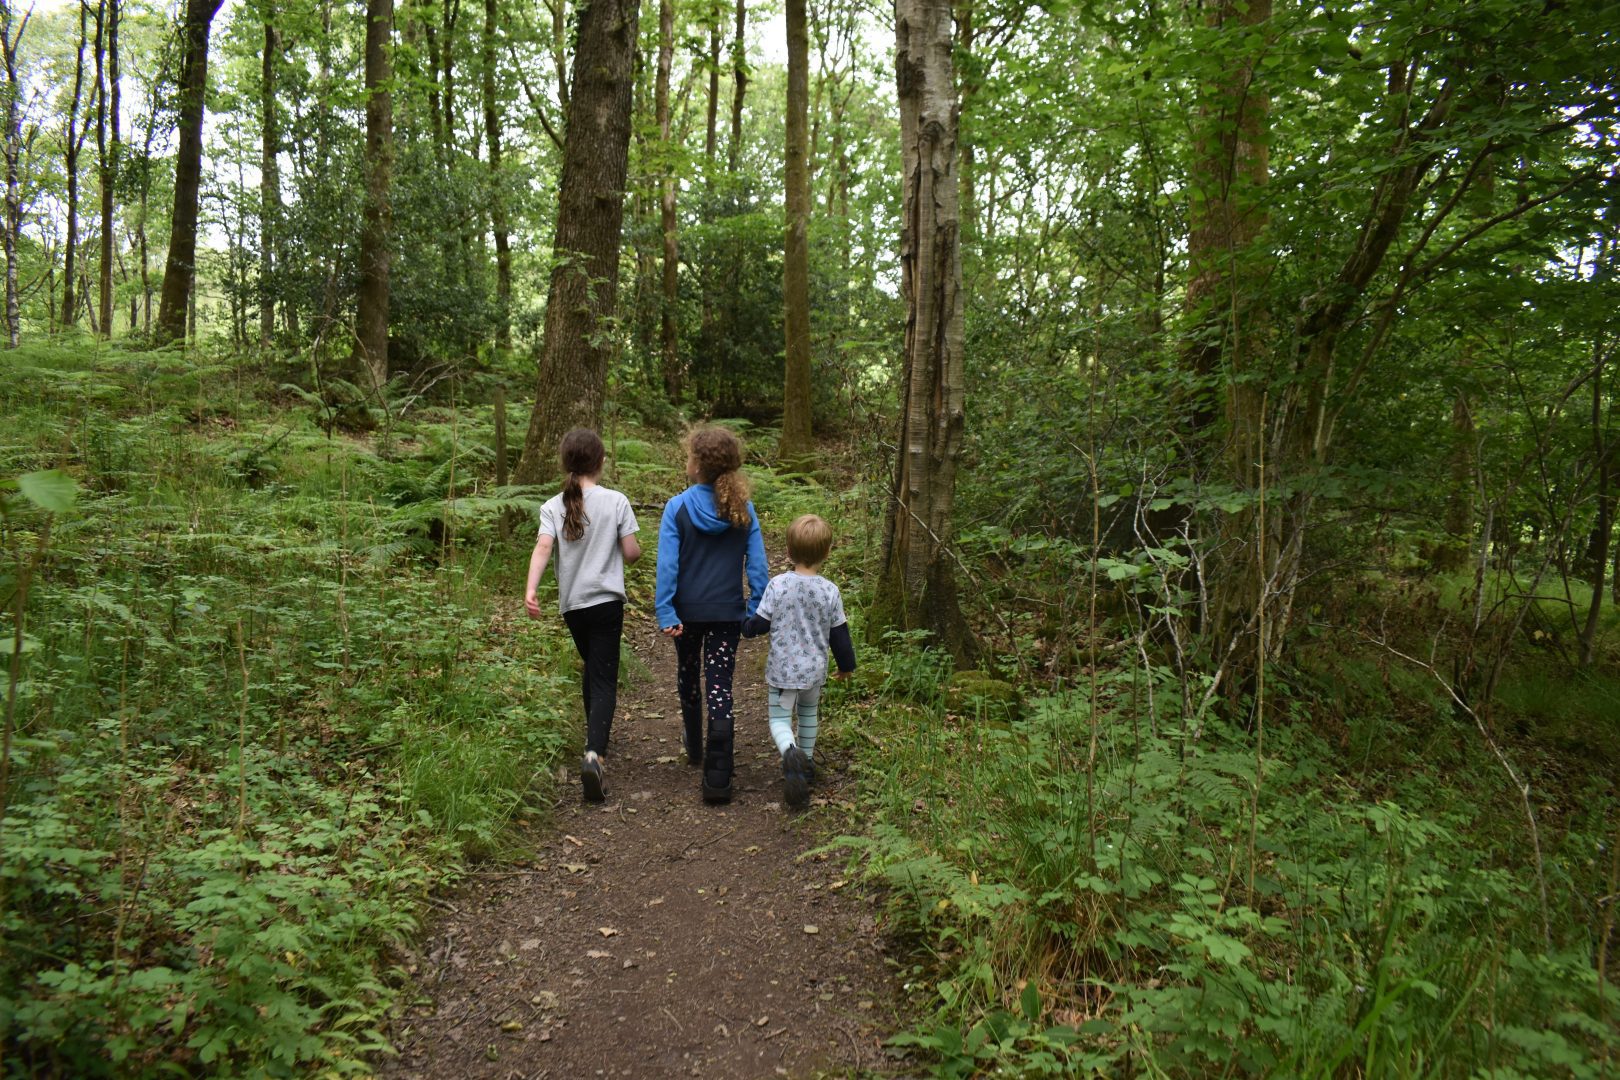 3 children walking through the woods